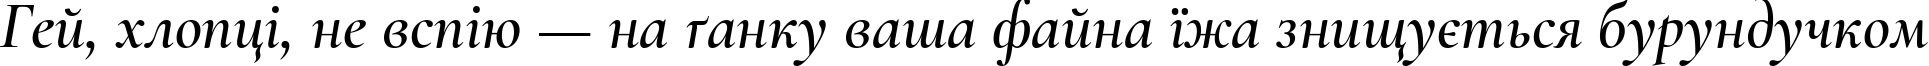 Пример написания шрифтом Cormorant SemiBold Italic текста на украинском